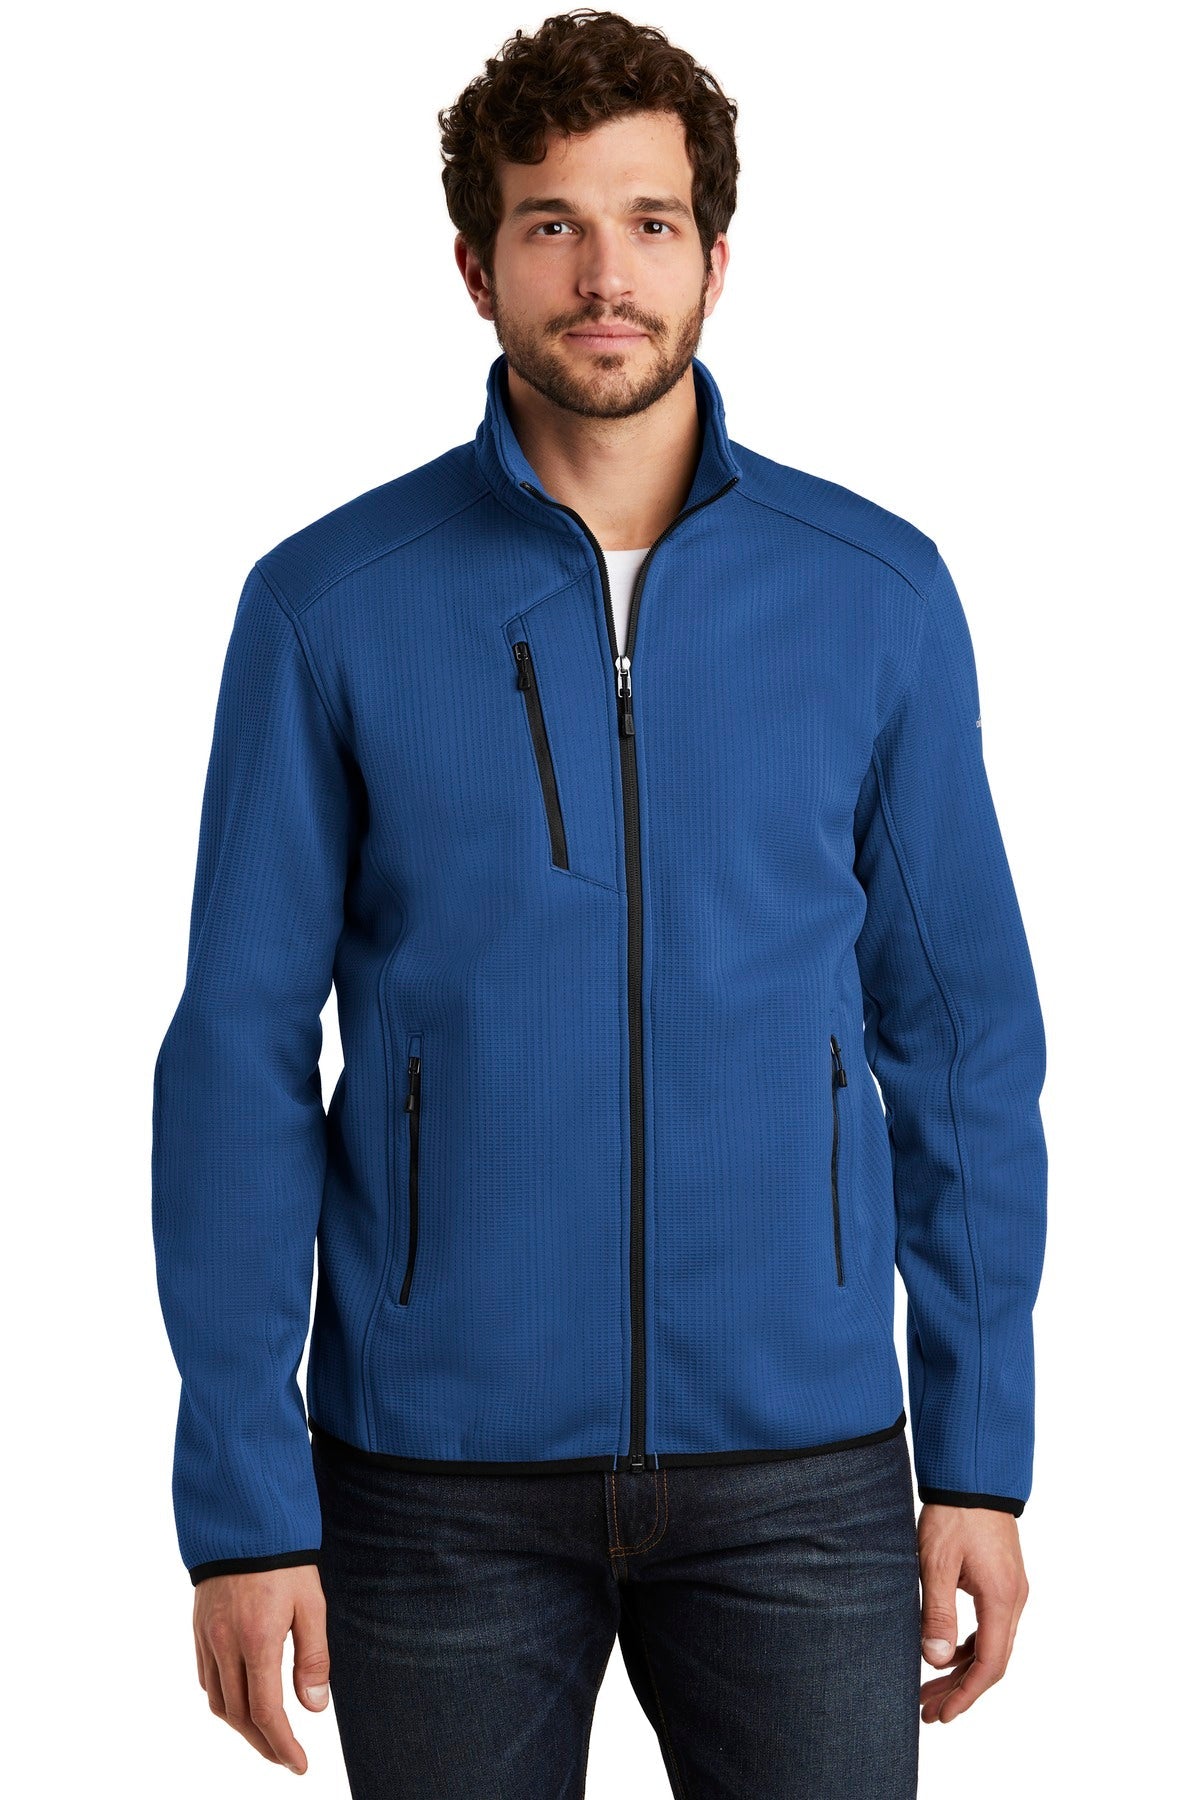 Eddie Bauer ® Dash Full-Zip Fleece Jacket. EB242 - DFW Impression